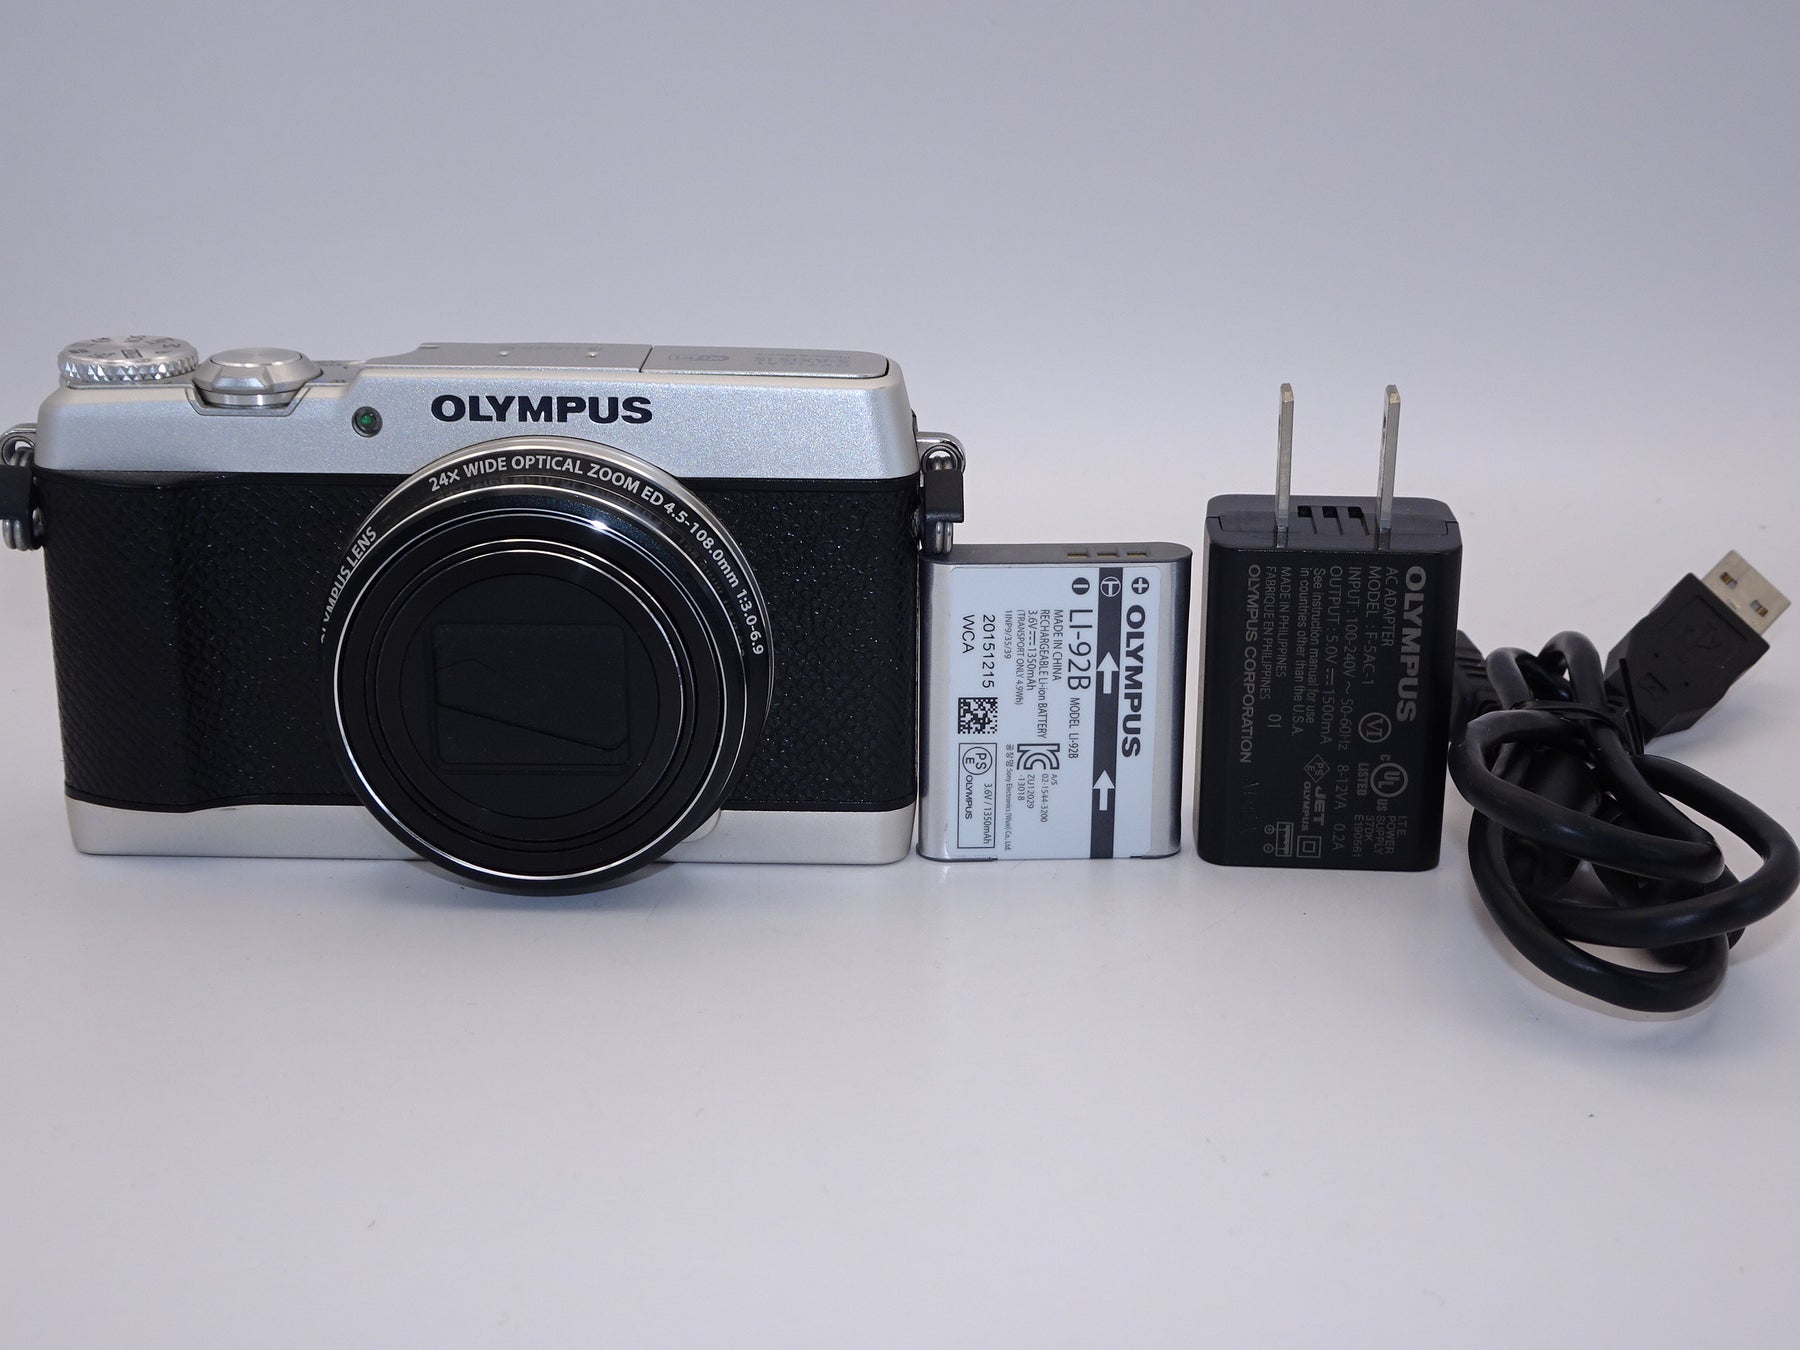 【外観特上級】OLYMPUS コンパクトデジタルカメラ STYLUS SH-3 シルバー